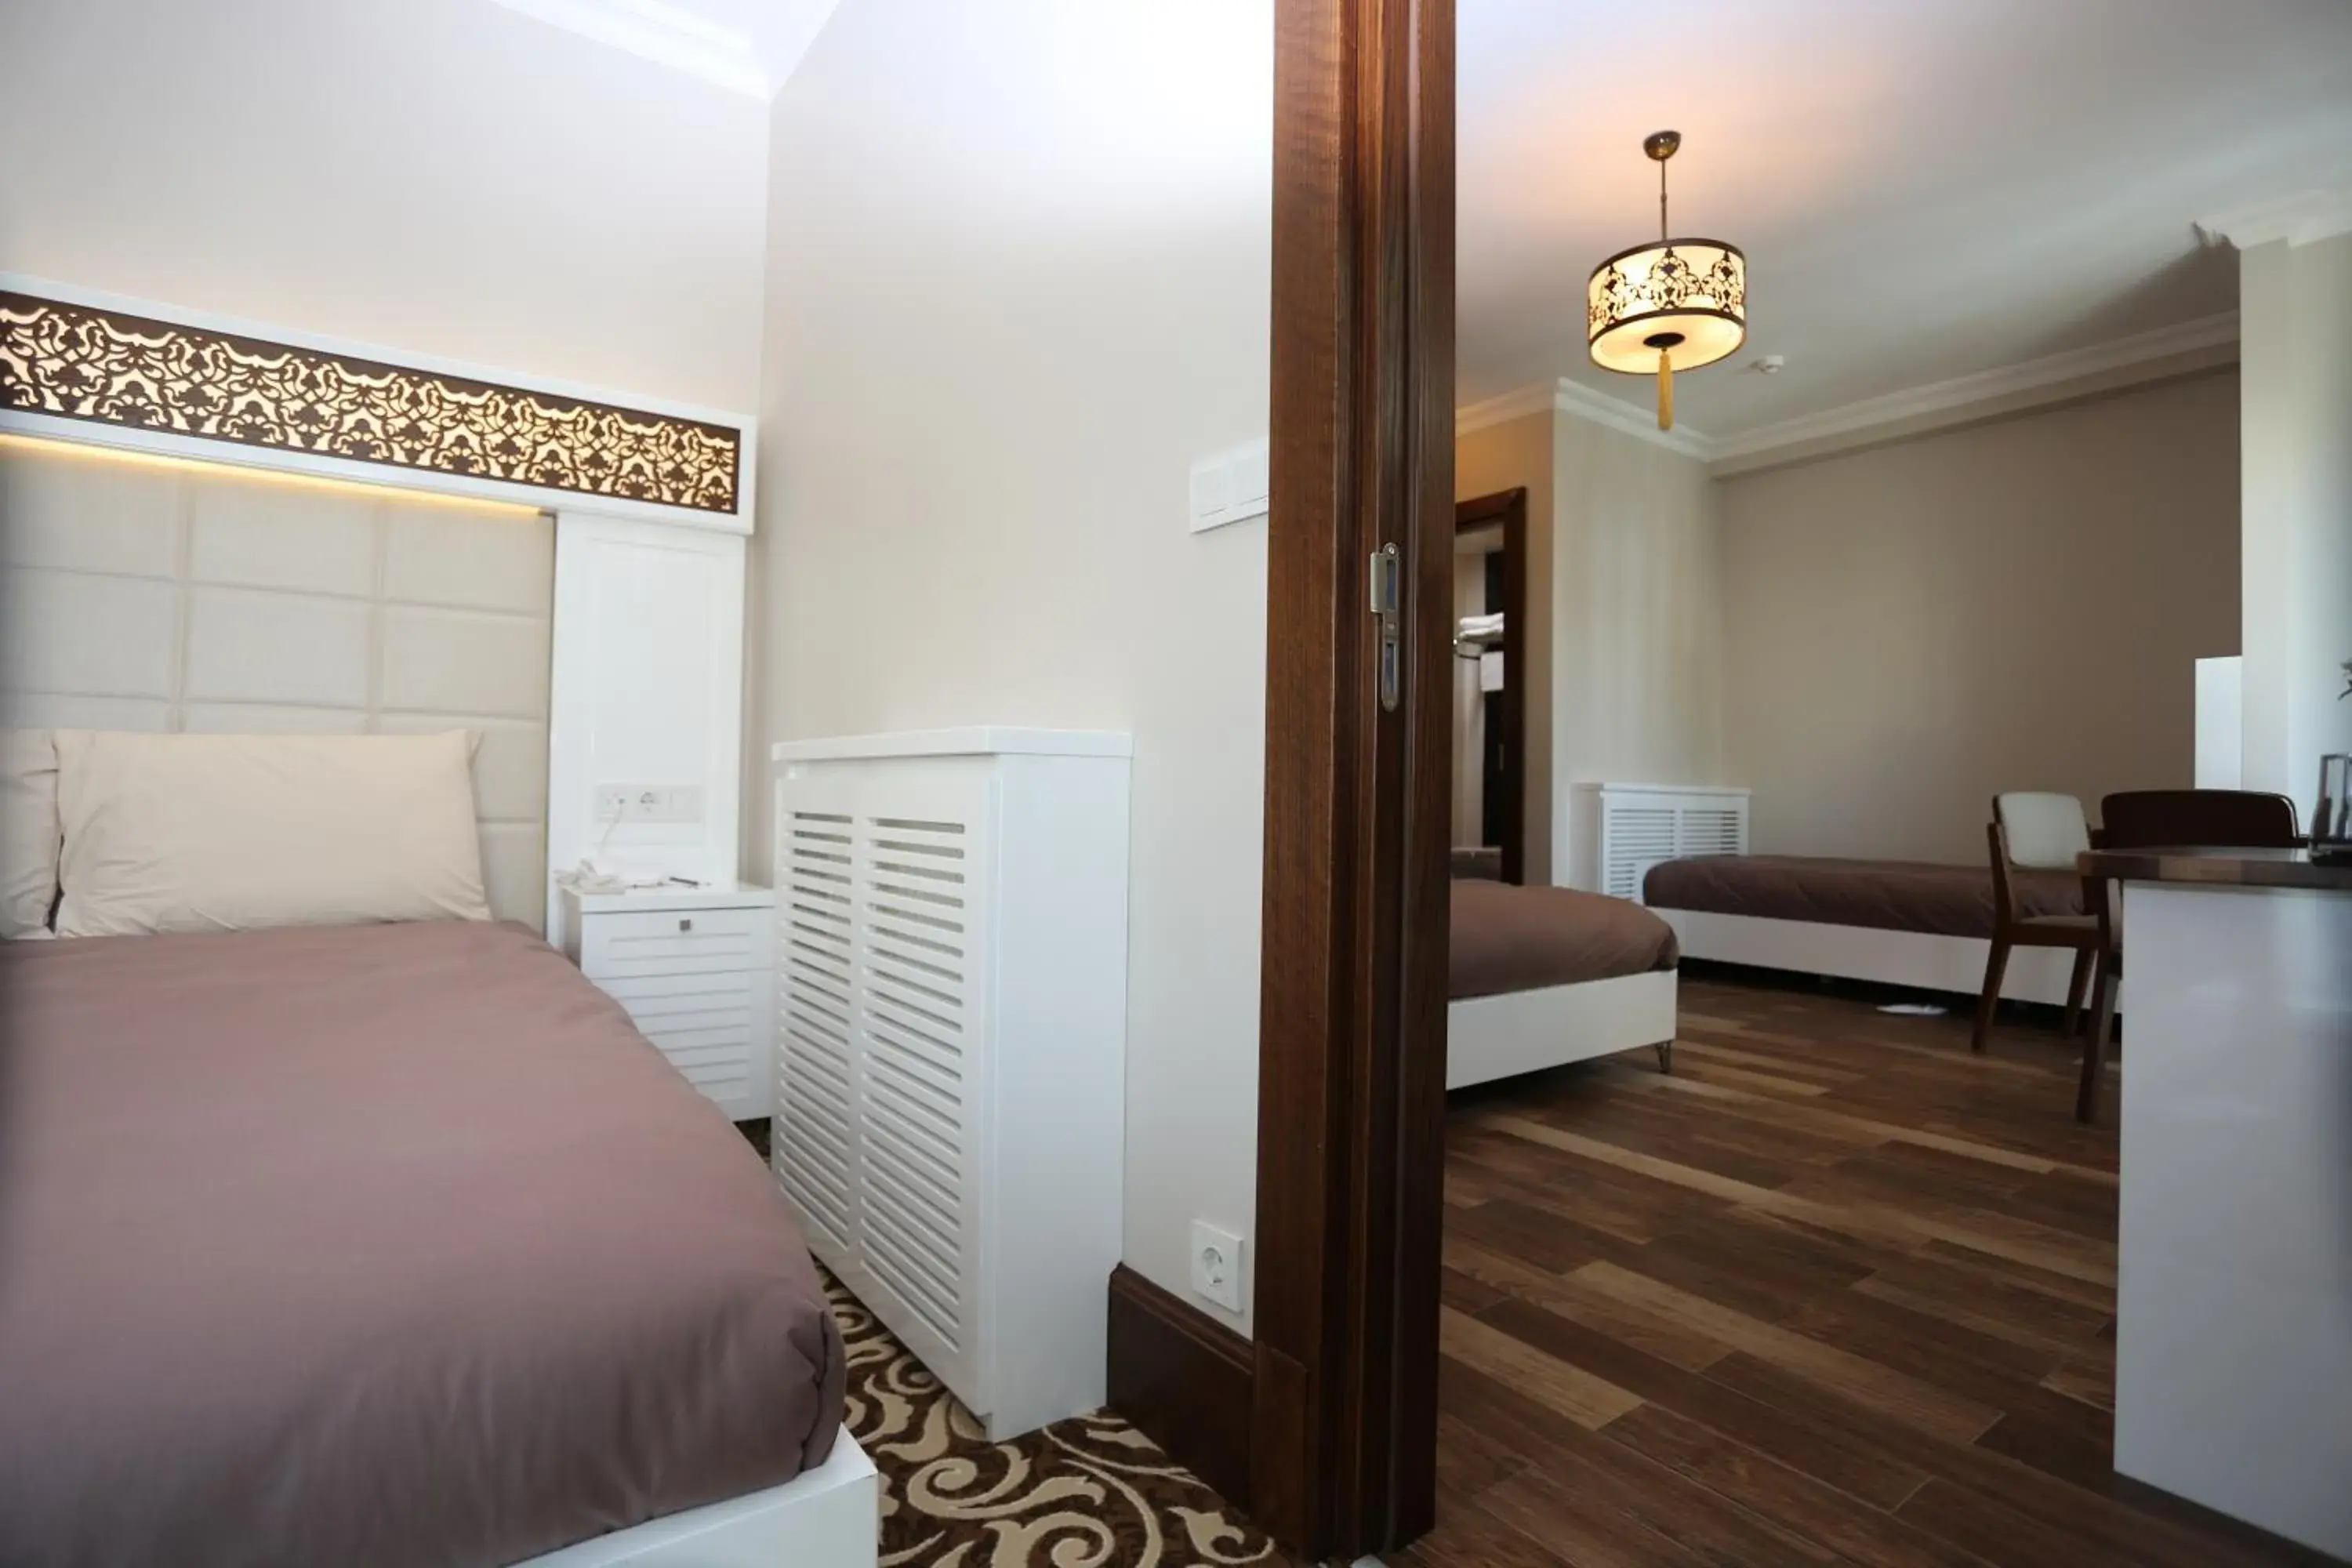 Bedroom, Room Photo in K Suites Hotel